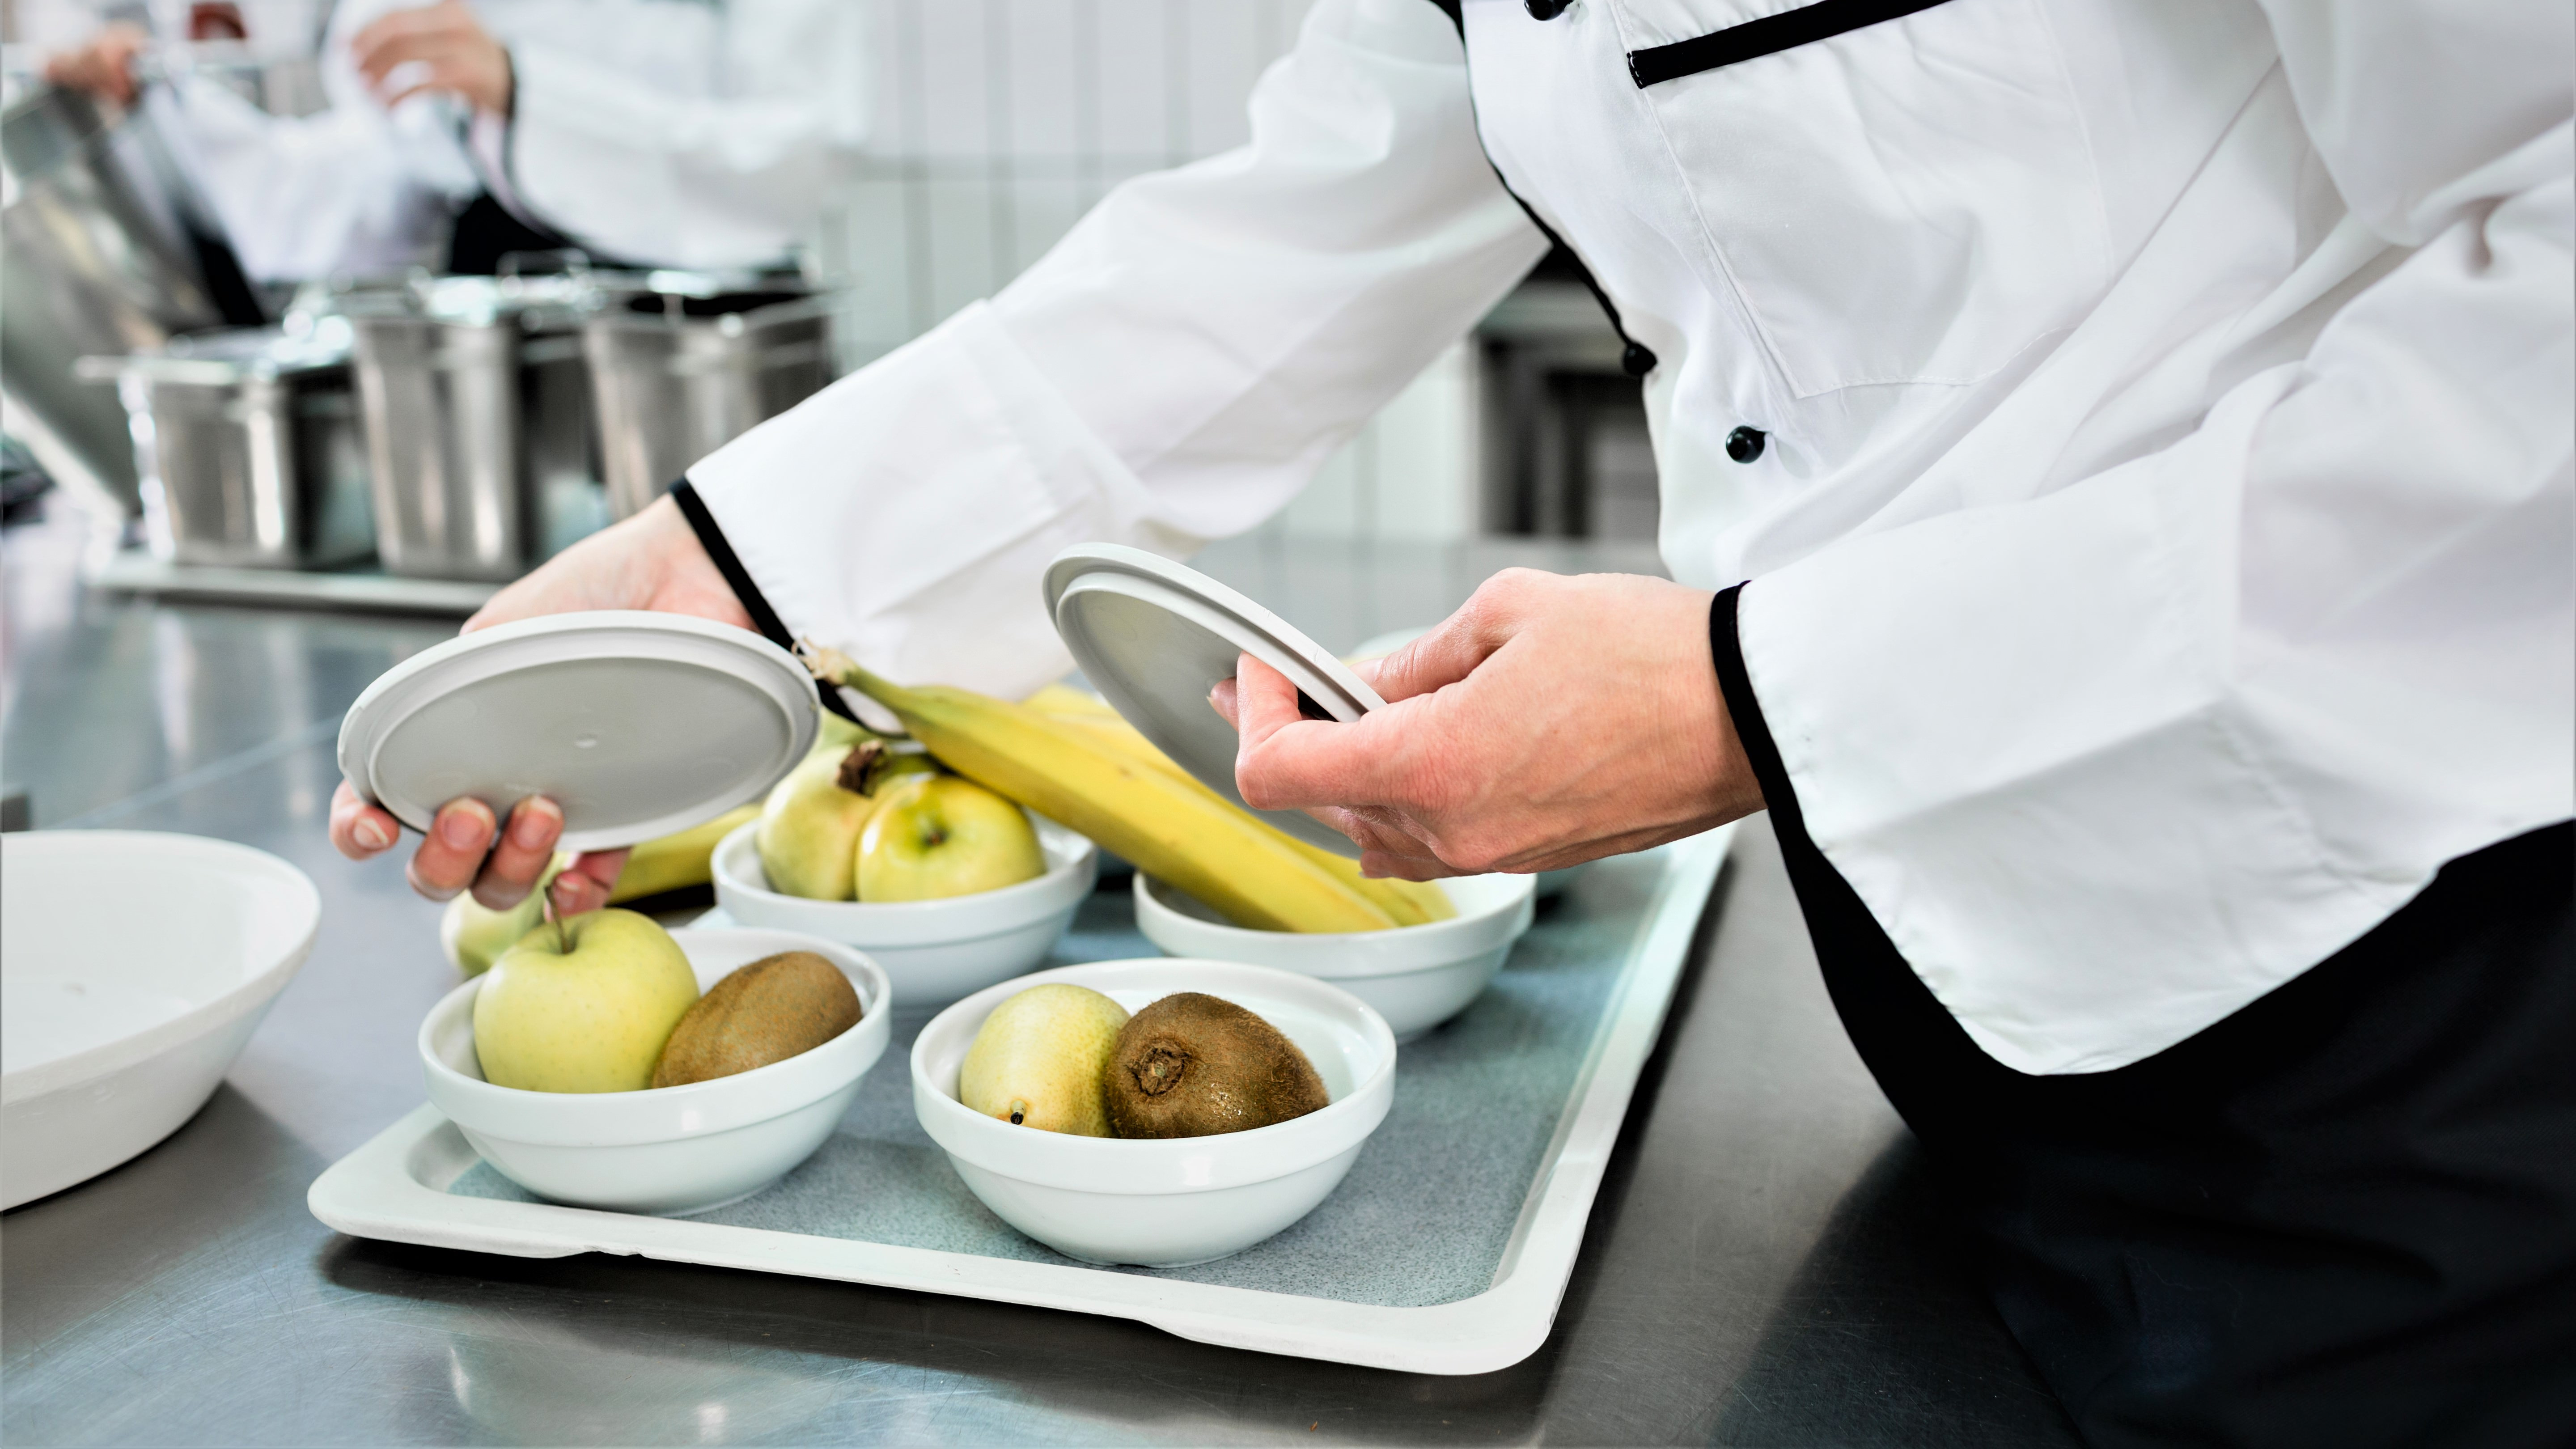 En kok er ved at anrette skåle med frugt; bananer, kiwier og æbler, i et køkken.